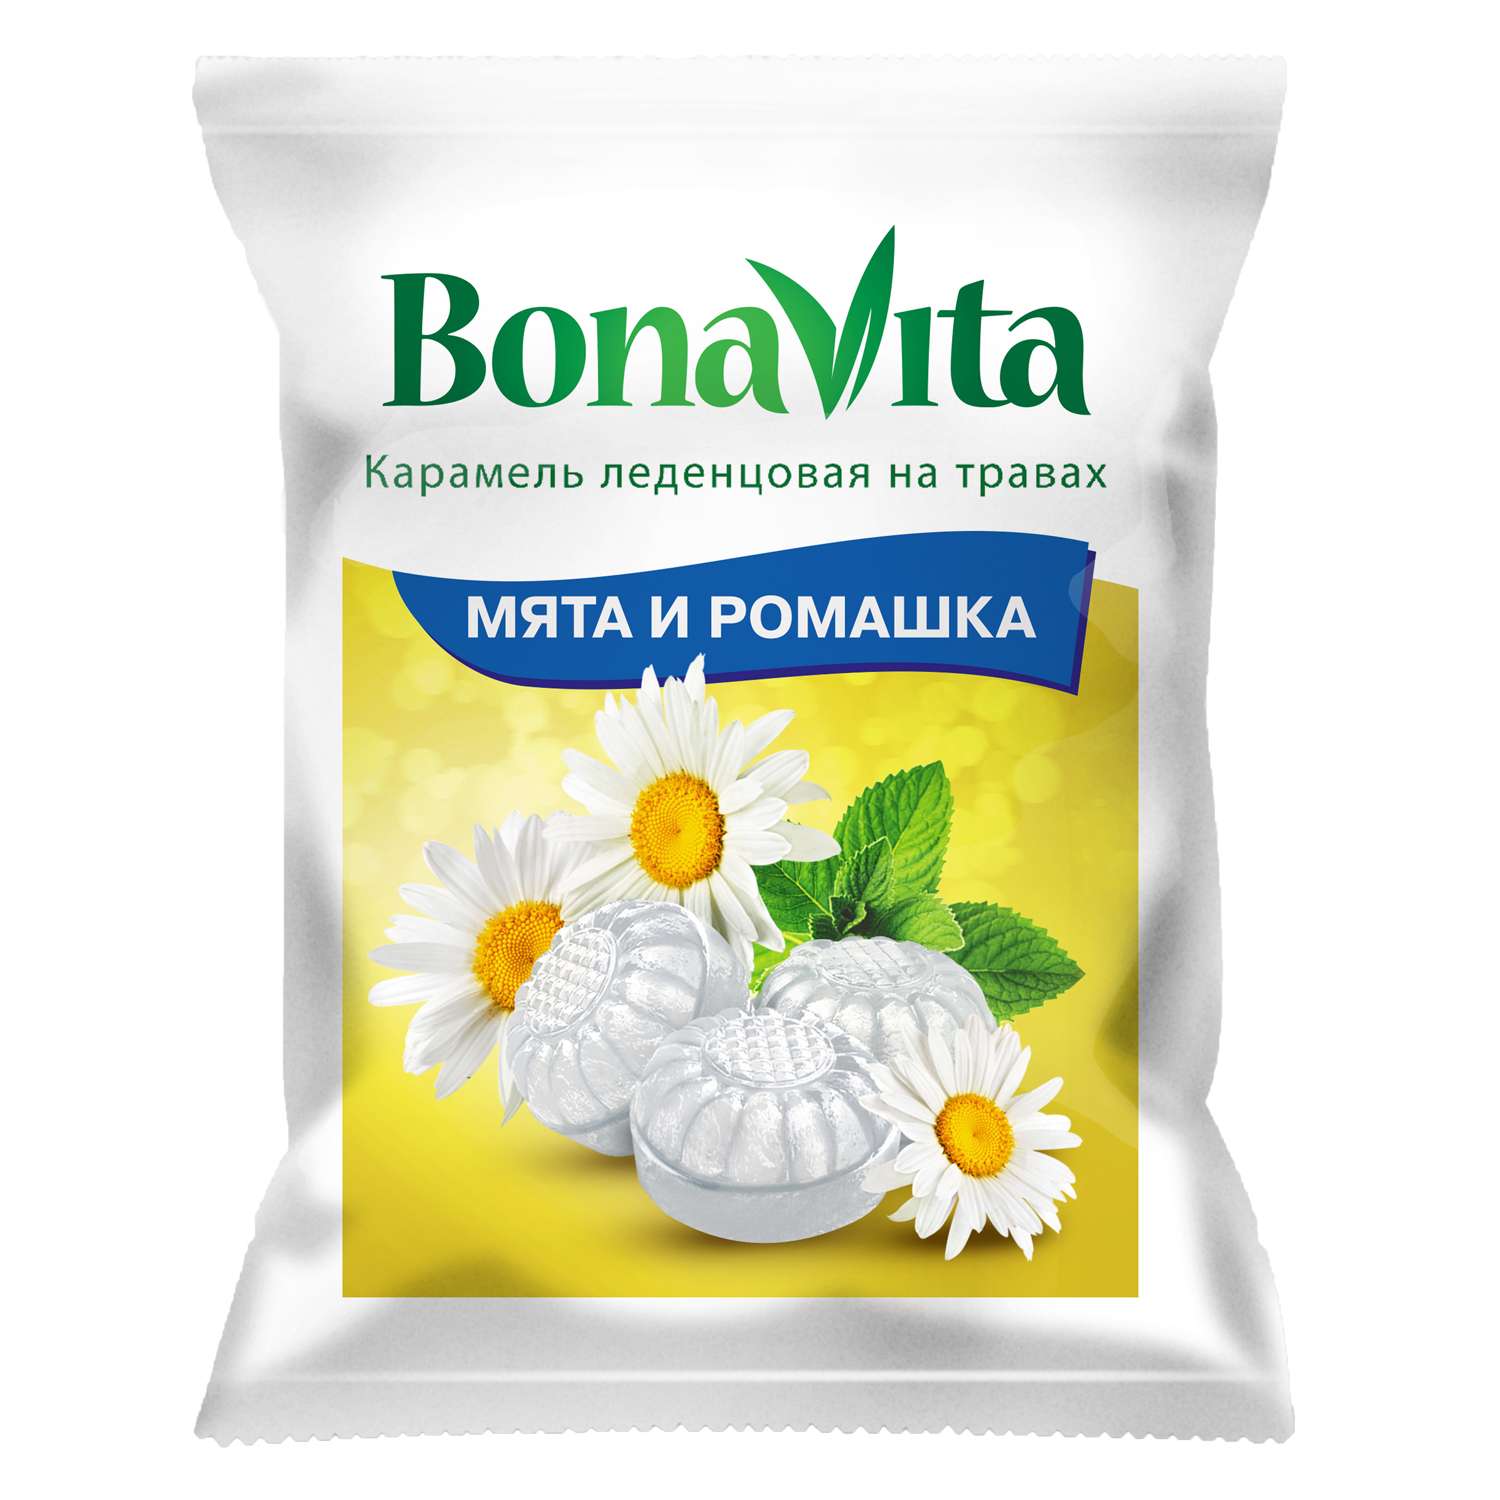 Биологически активная добавка Карамель BonaVita леденцовая мята и ромашка с витамином С на травах 60г - фото 1